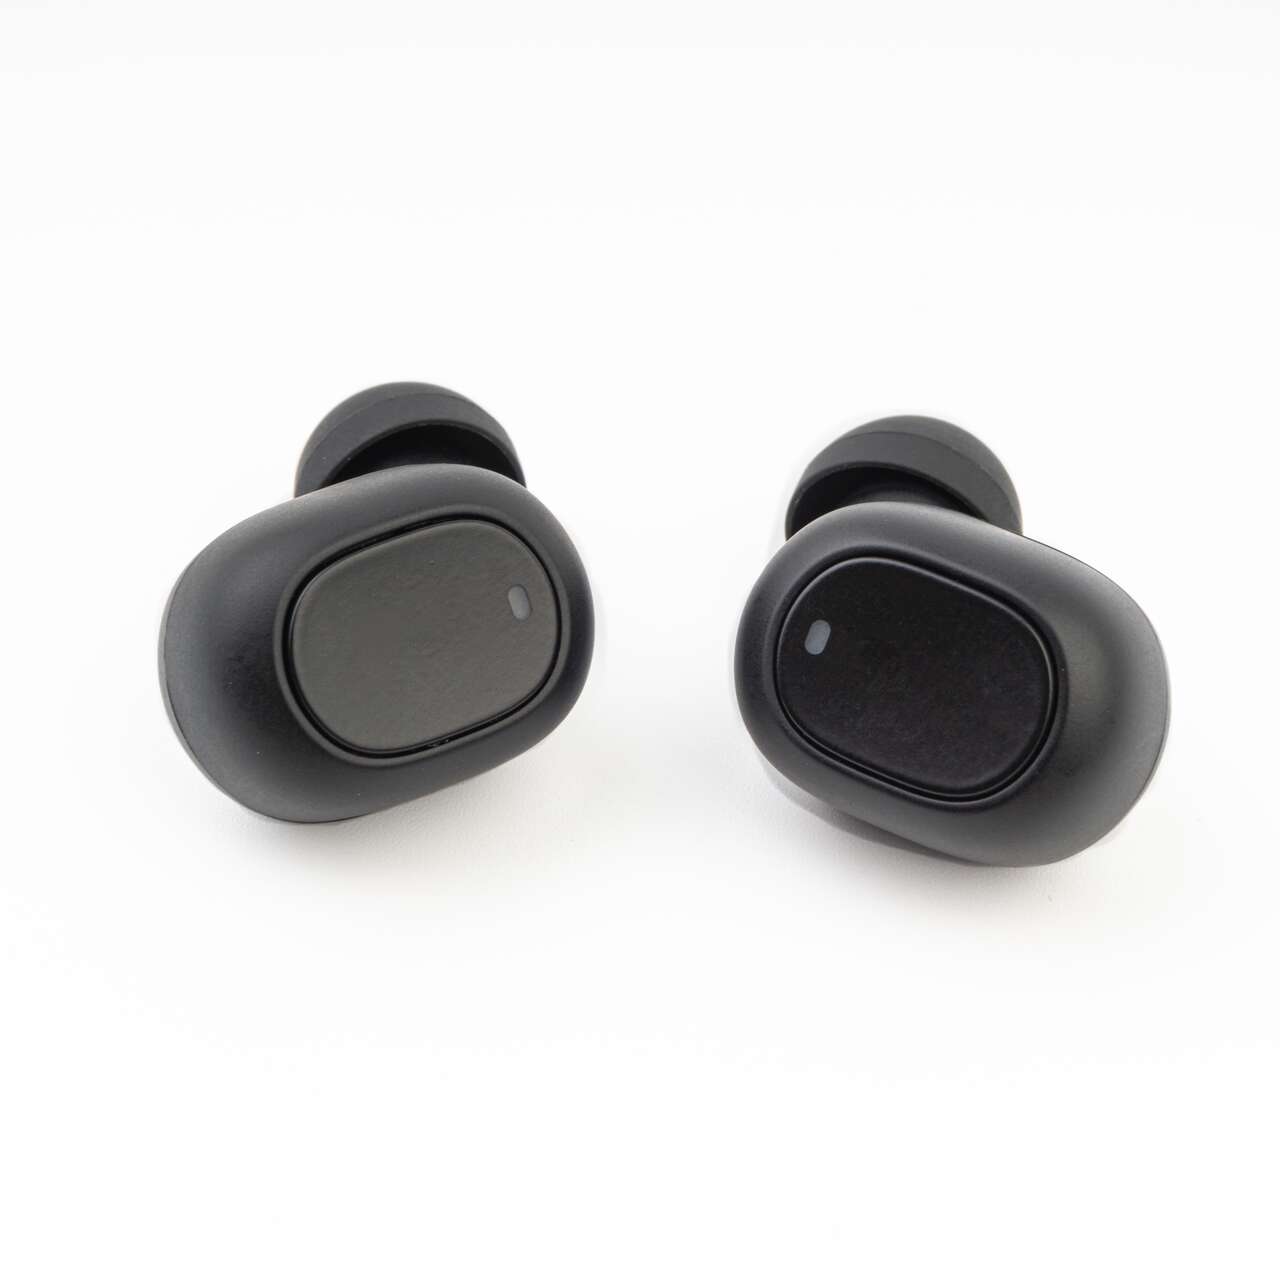 Moins de 14 euros pour ces écouteurs sans fil Xiaomi façon AirPods